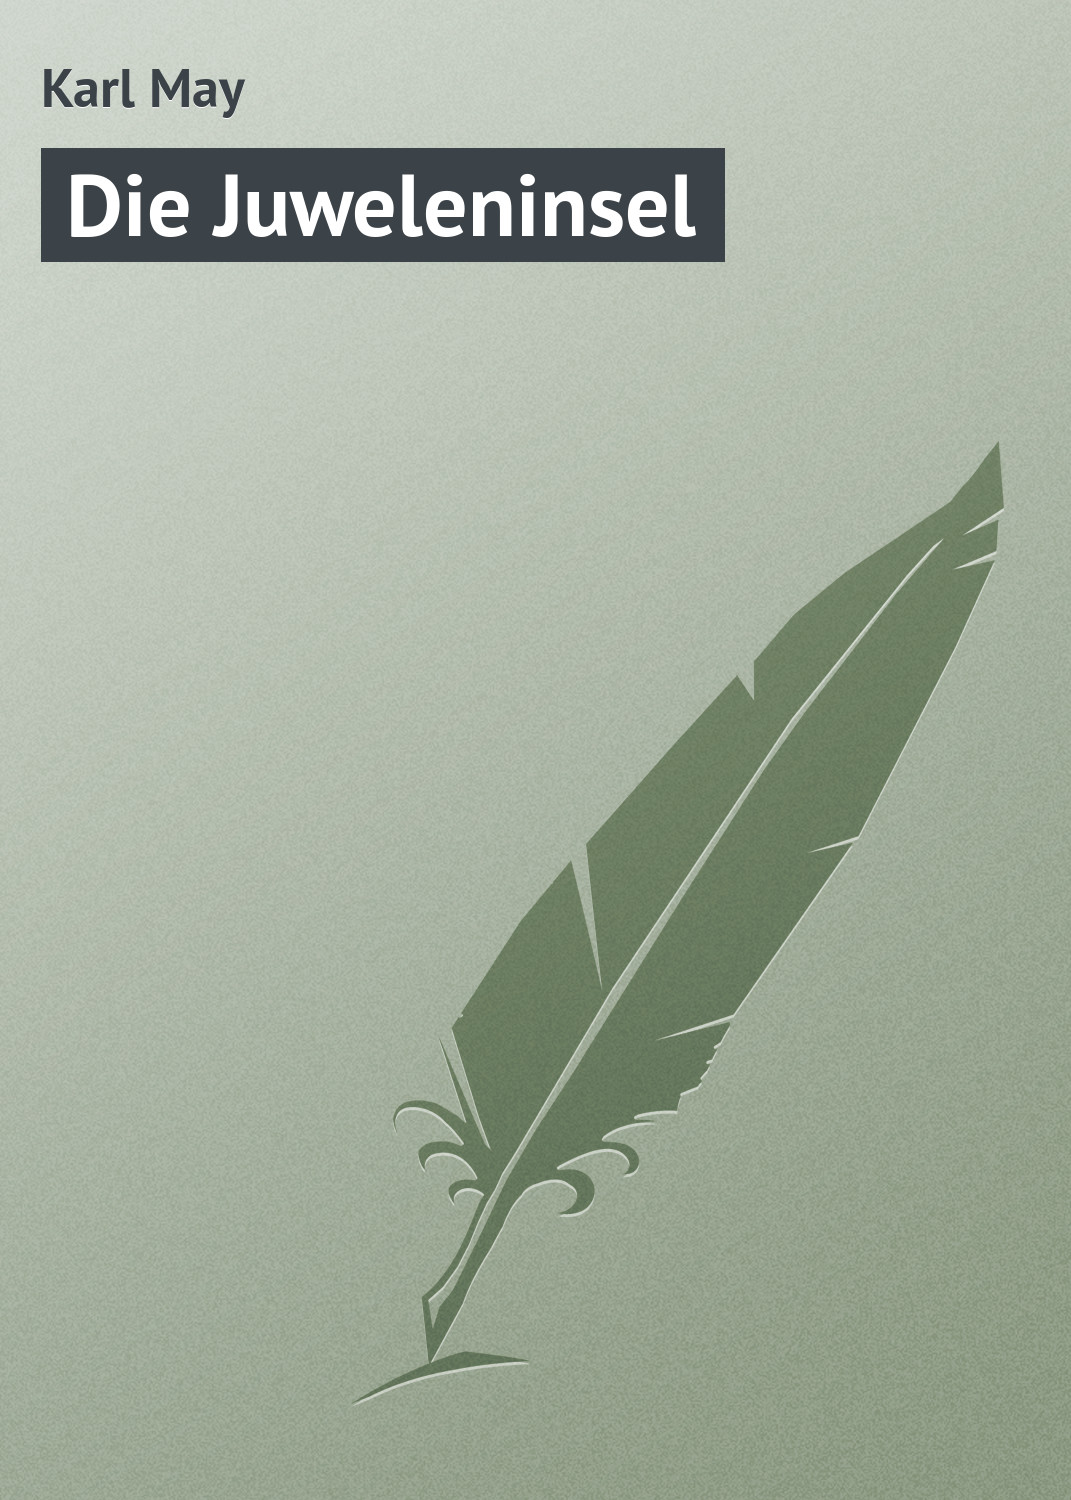 Книга Die Juweleninsel из серии , созданная Karl May, может относится к жанру Зарубежная старинная литература, Зарубежная классика. Стоимость электронной книги Die Juweleninsel с идентификатором 21106942 составляет 5.99 руб.